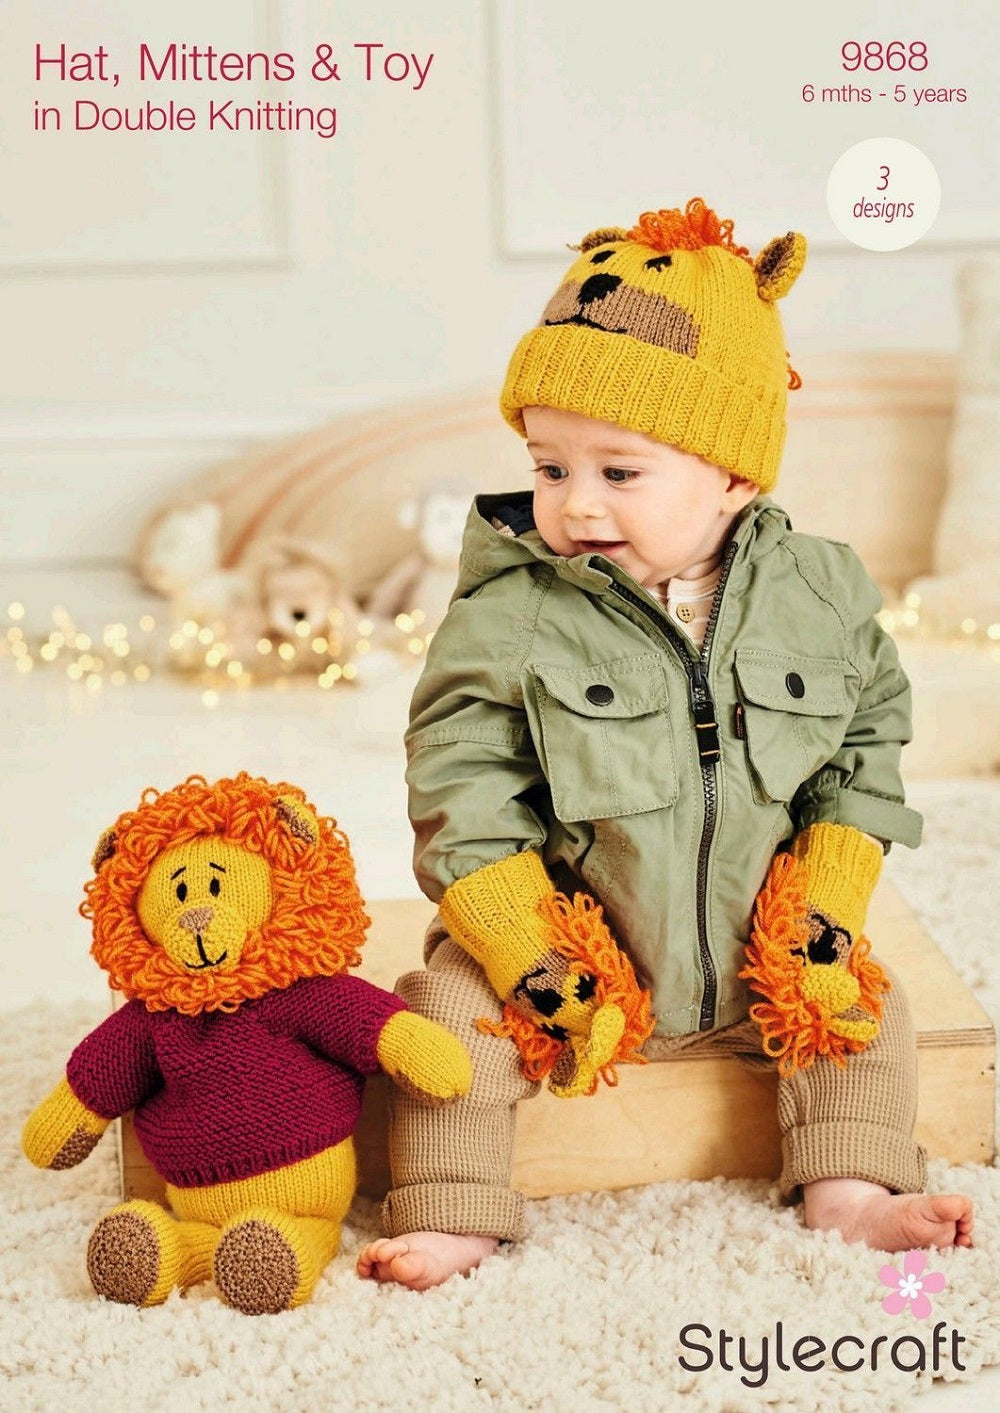 Stylecraft 9868 Baby DK Hat Mittens Toy Knitting Pattern